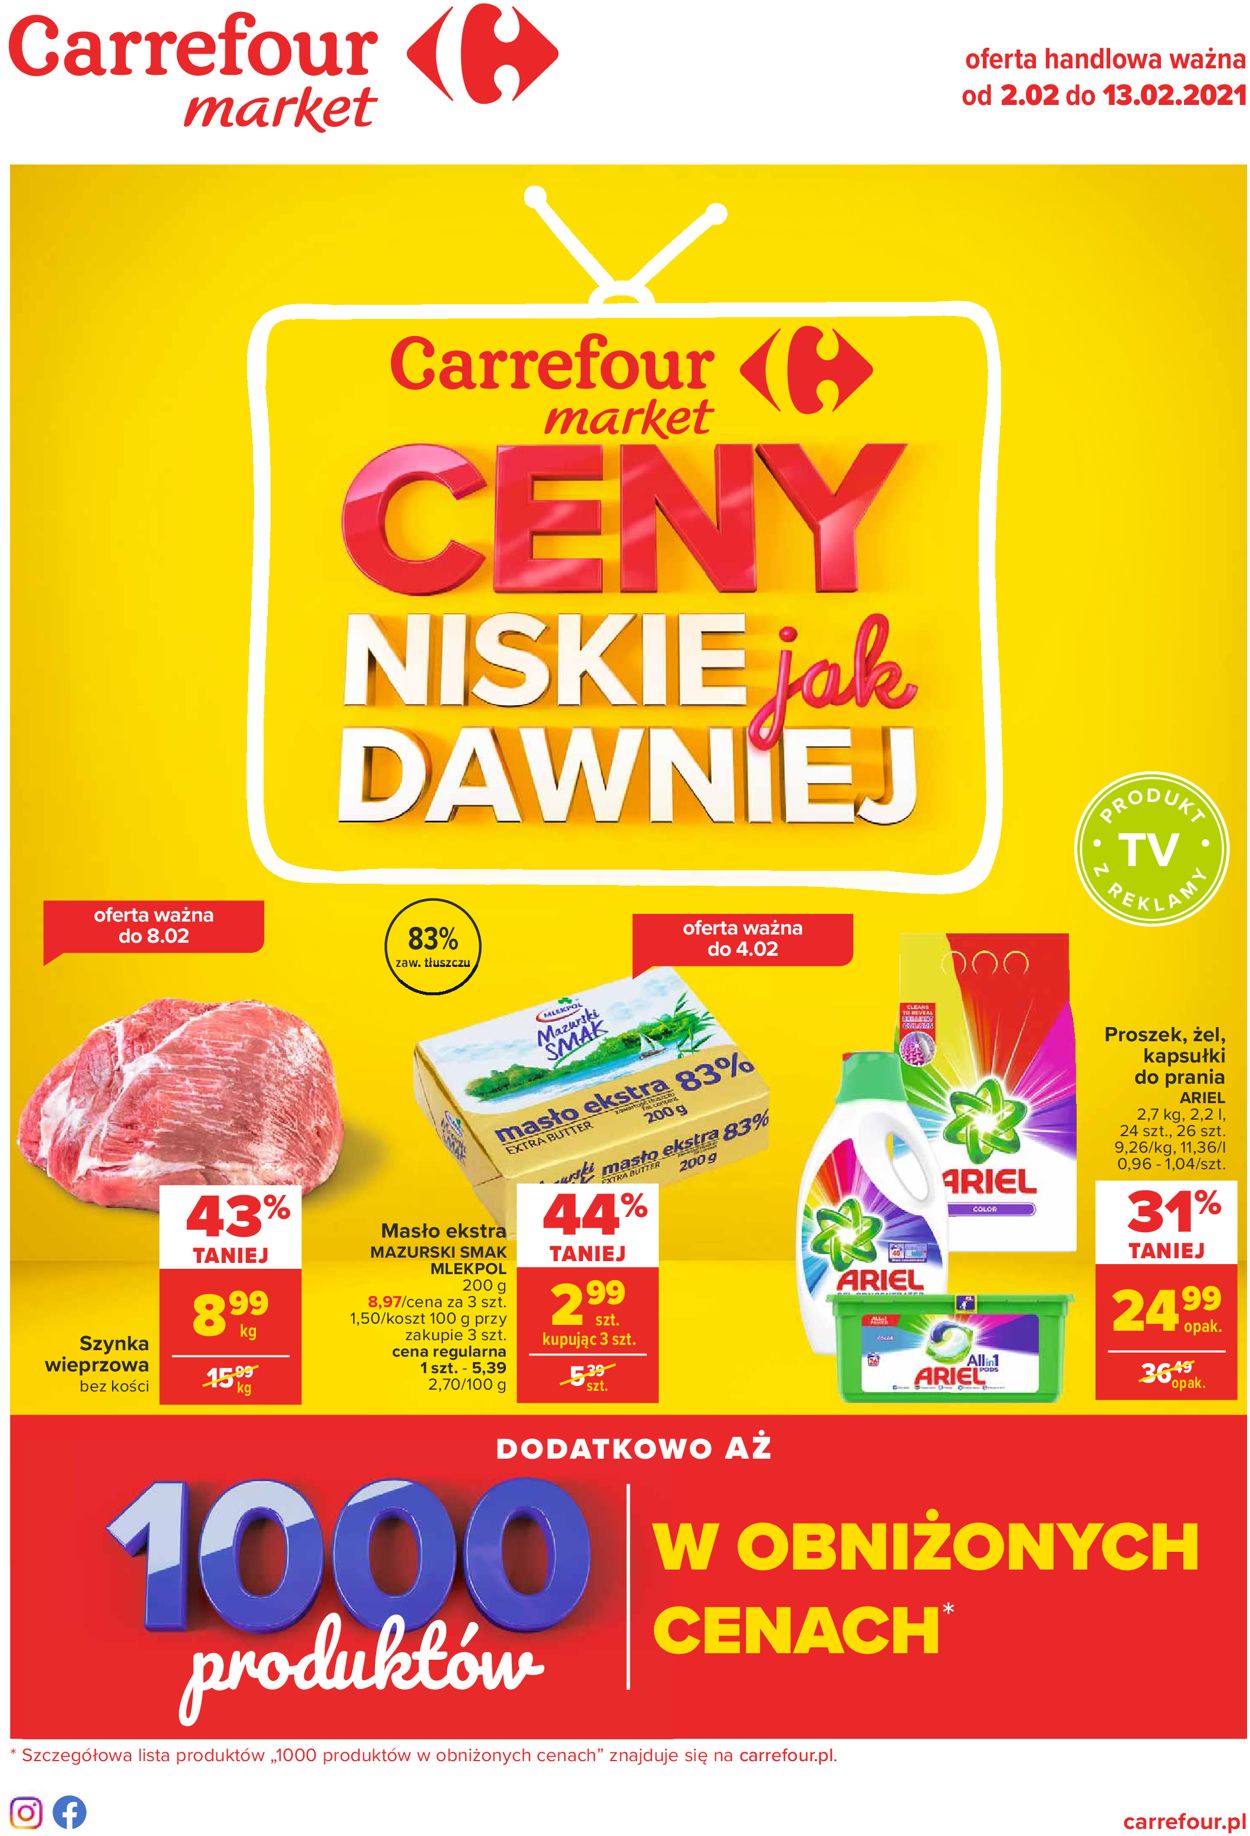 Carrefour Gazetka od 02.02.2021